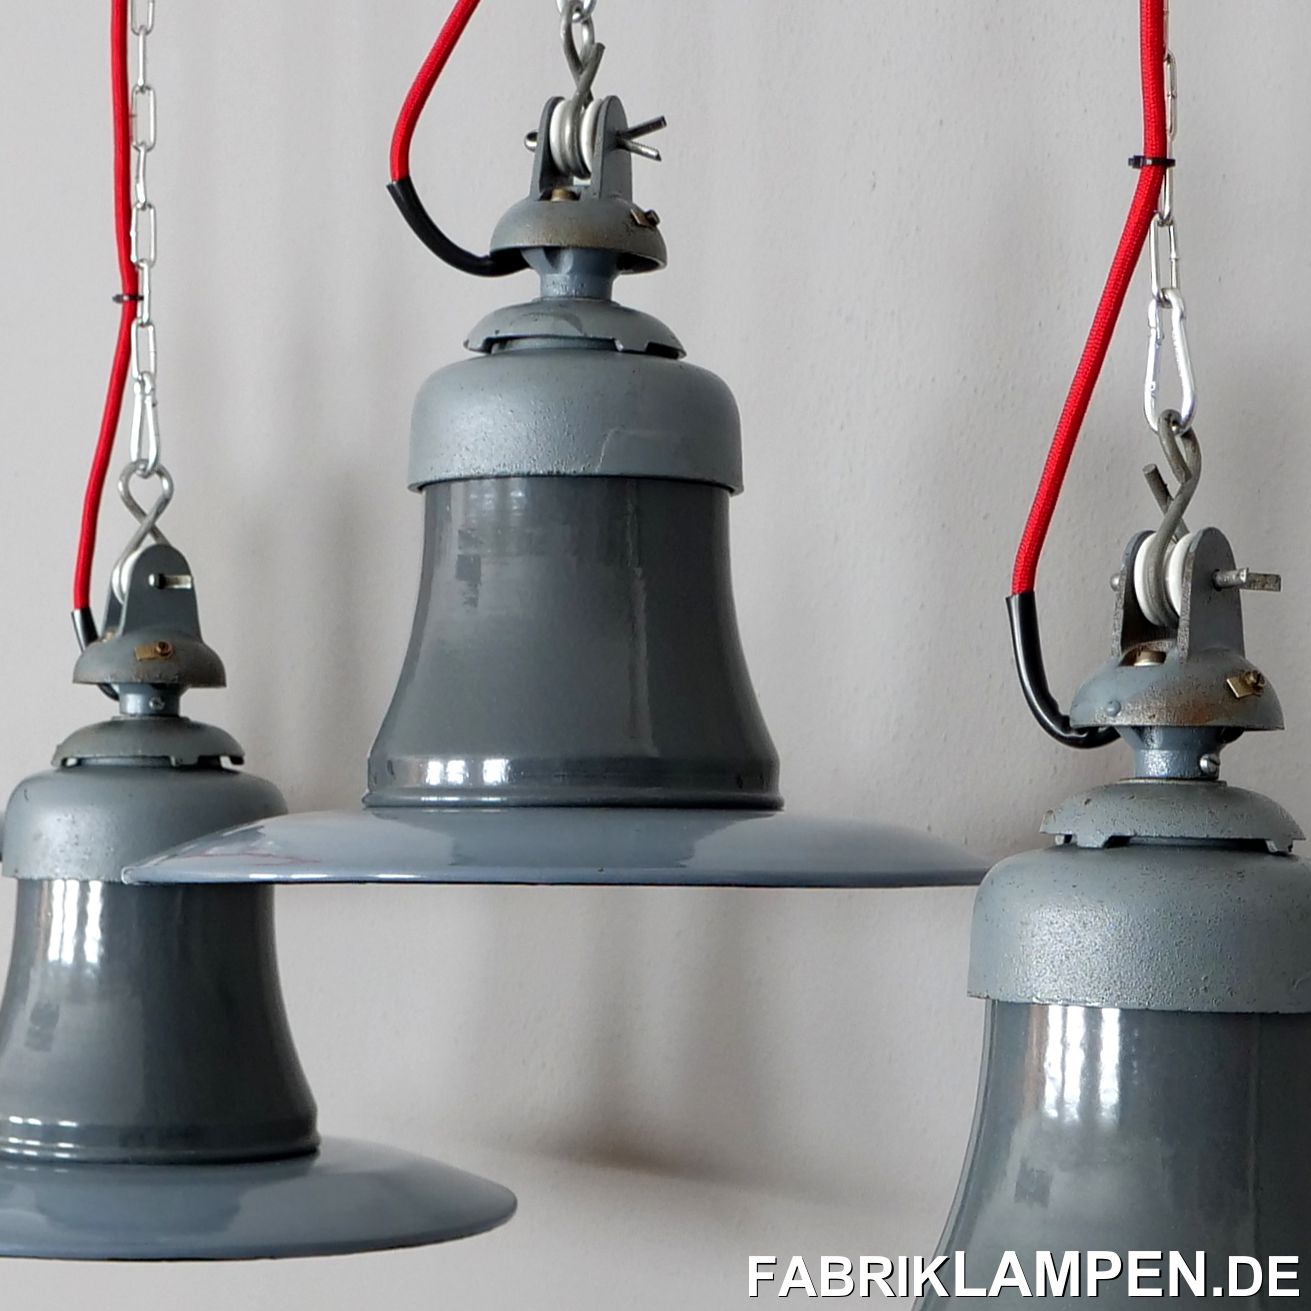 fabriklampen.de - old industrial lamps